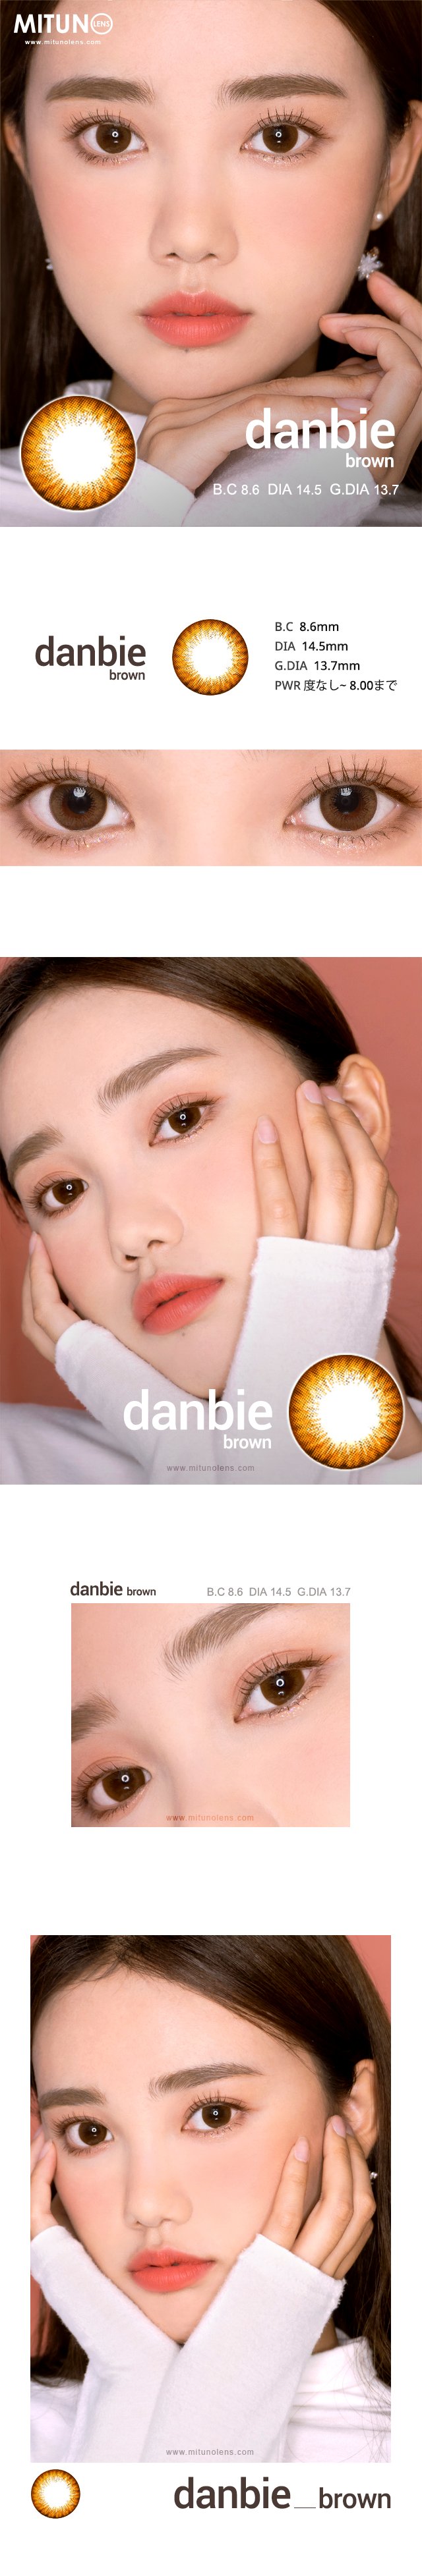 danbi_brown